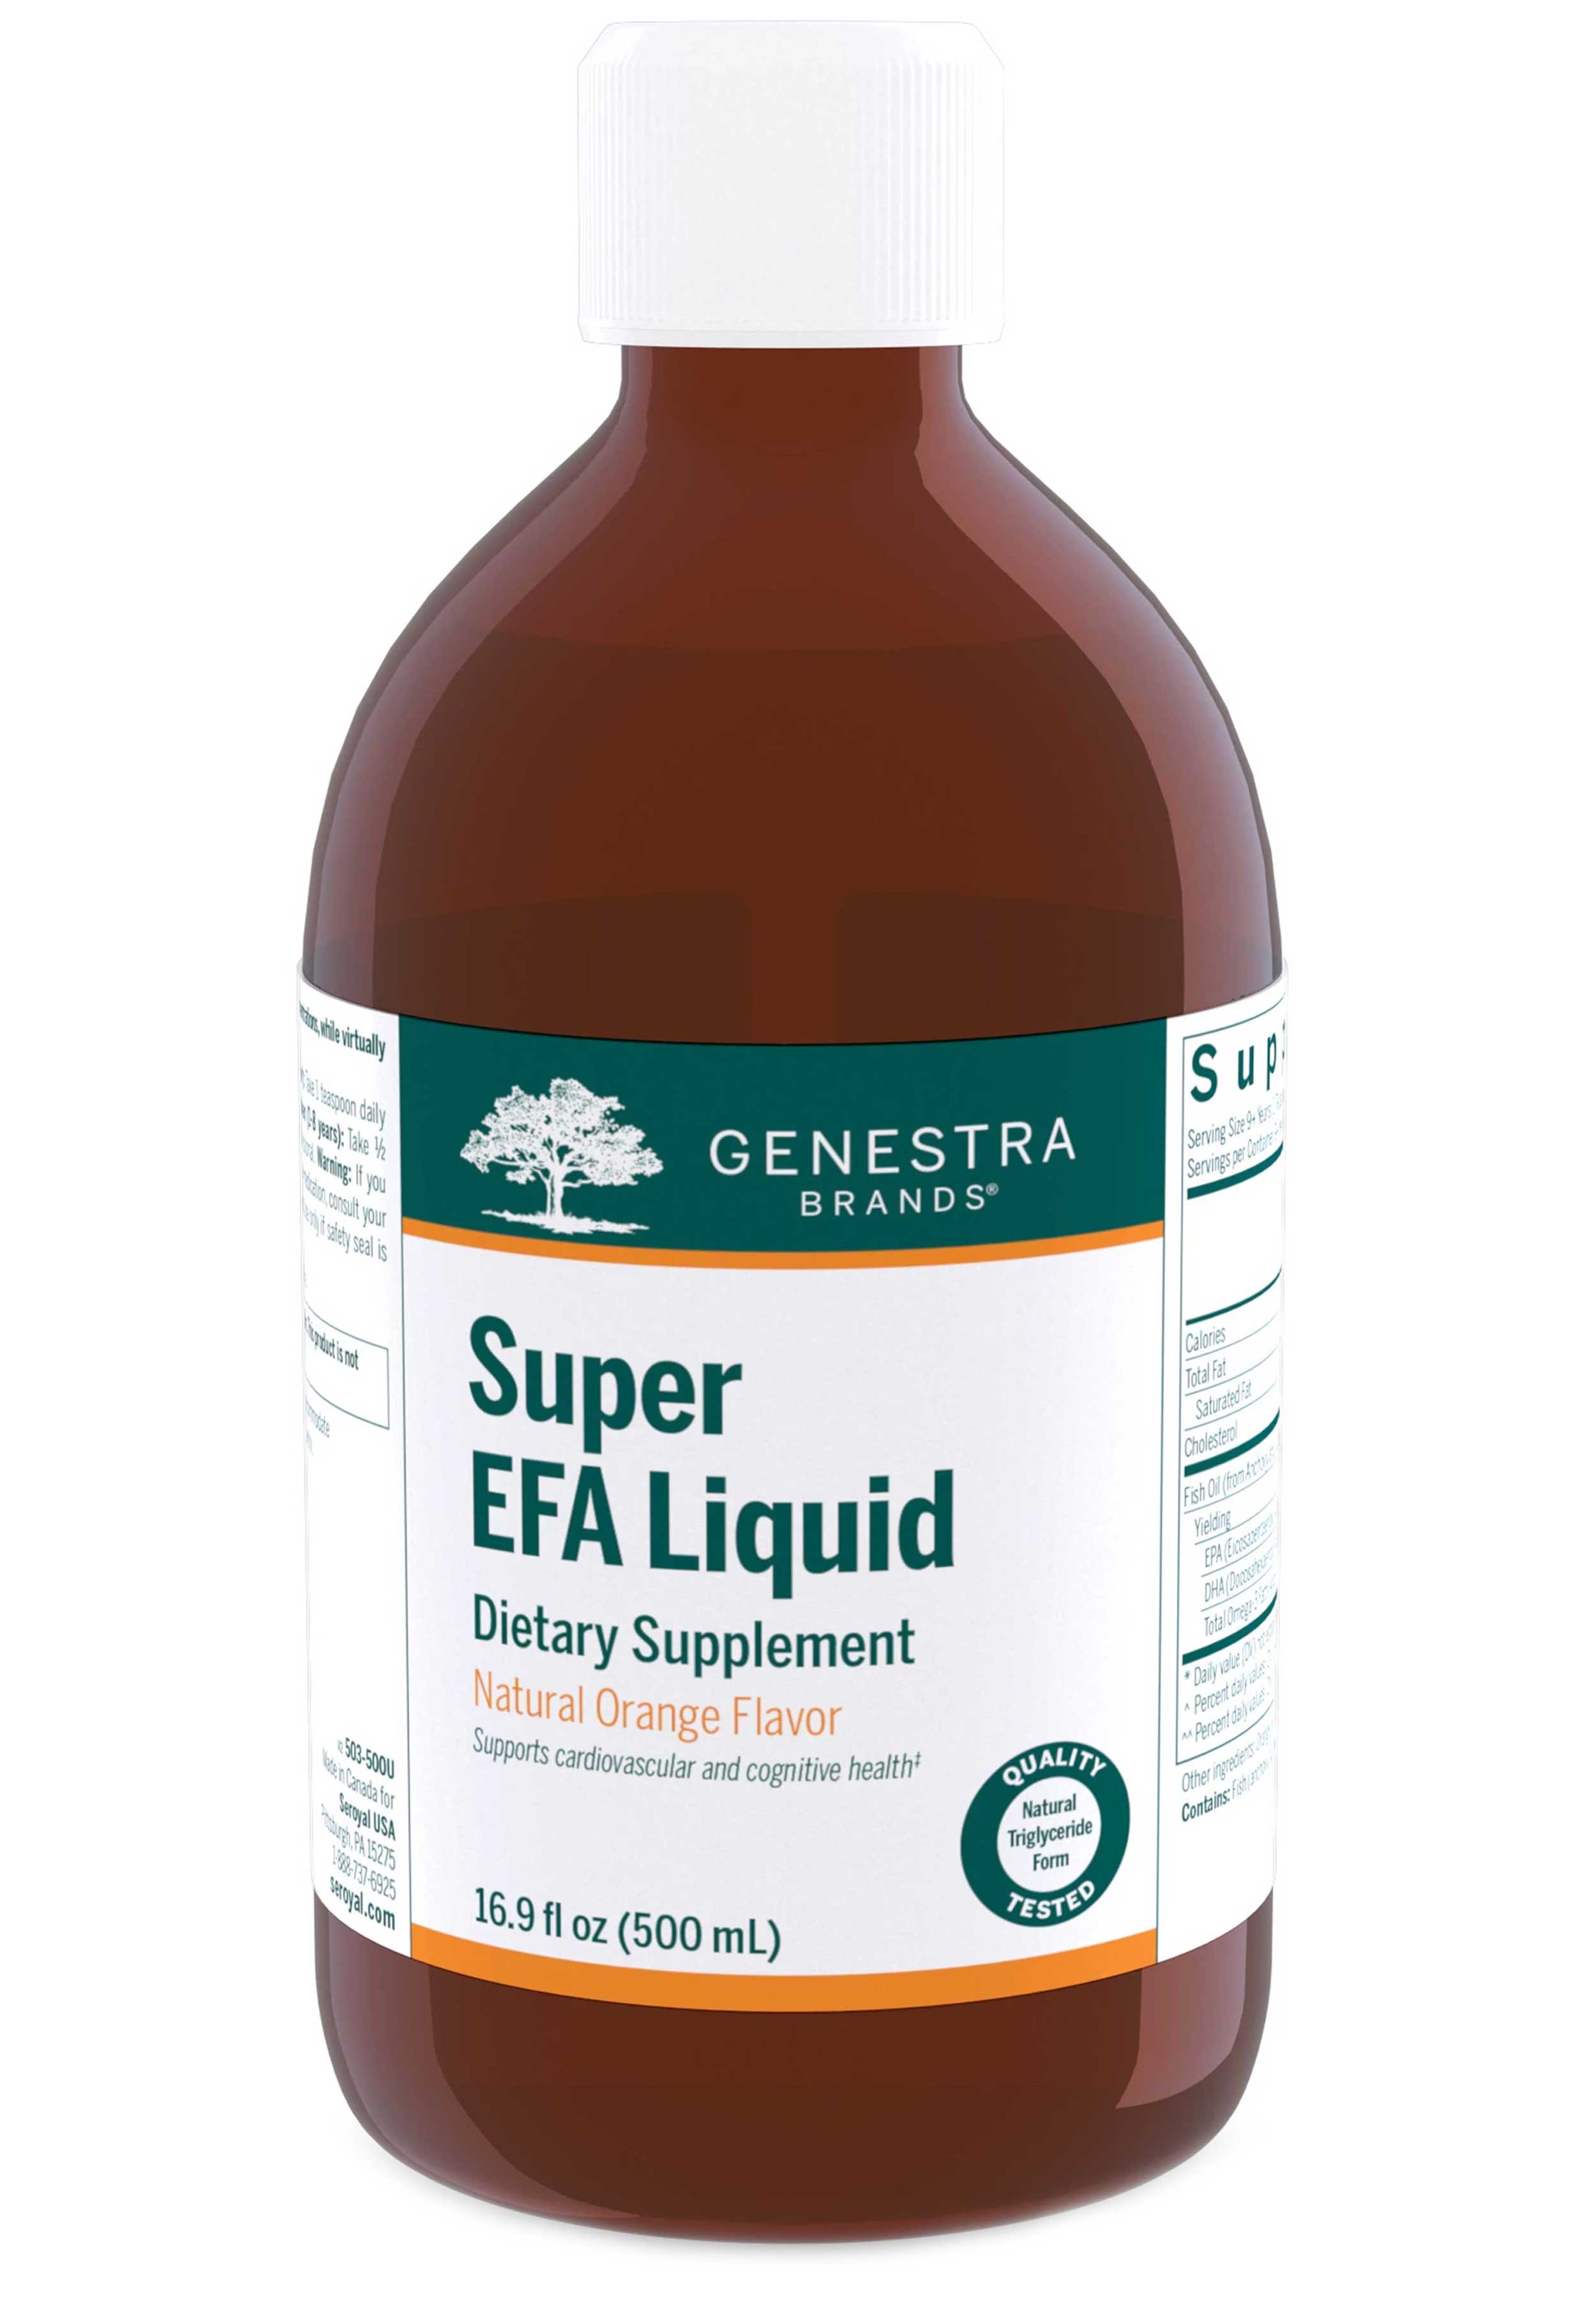 Genestra Brands Super EFA Liquid